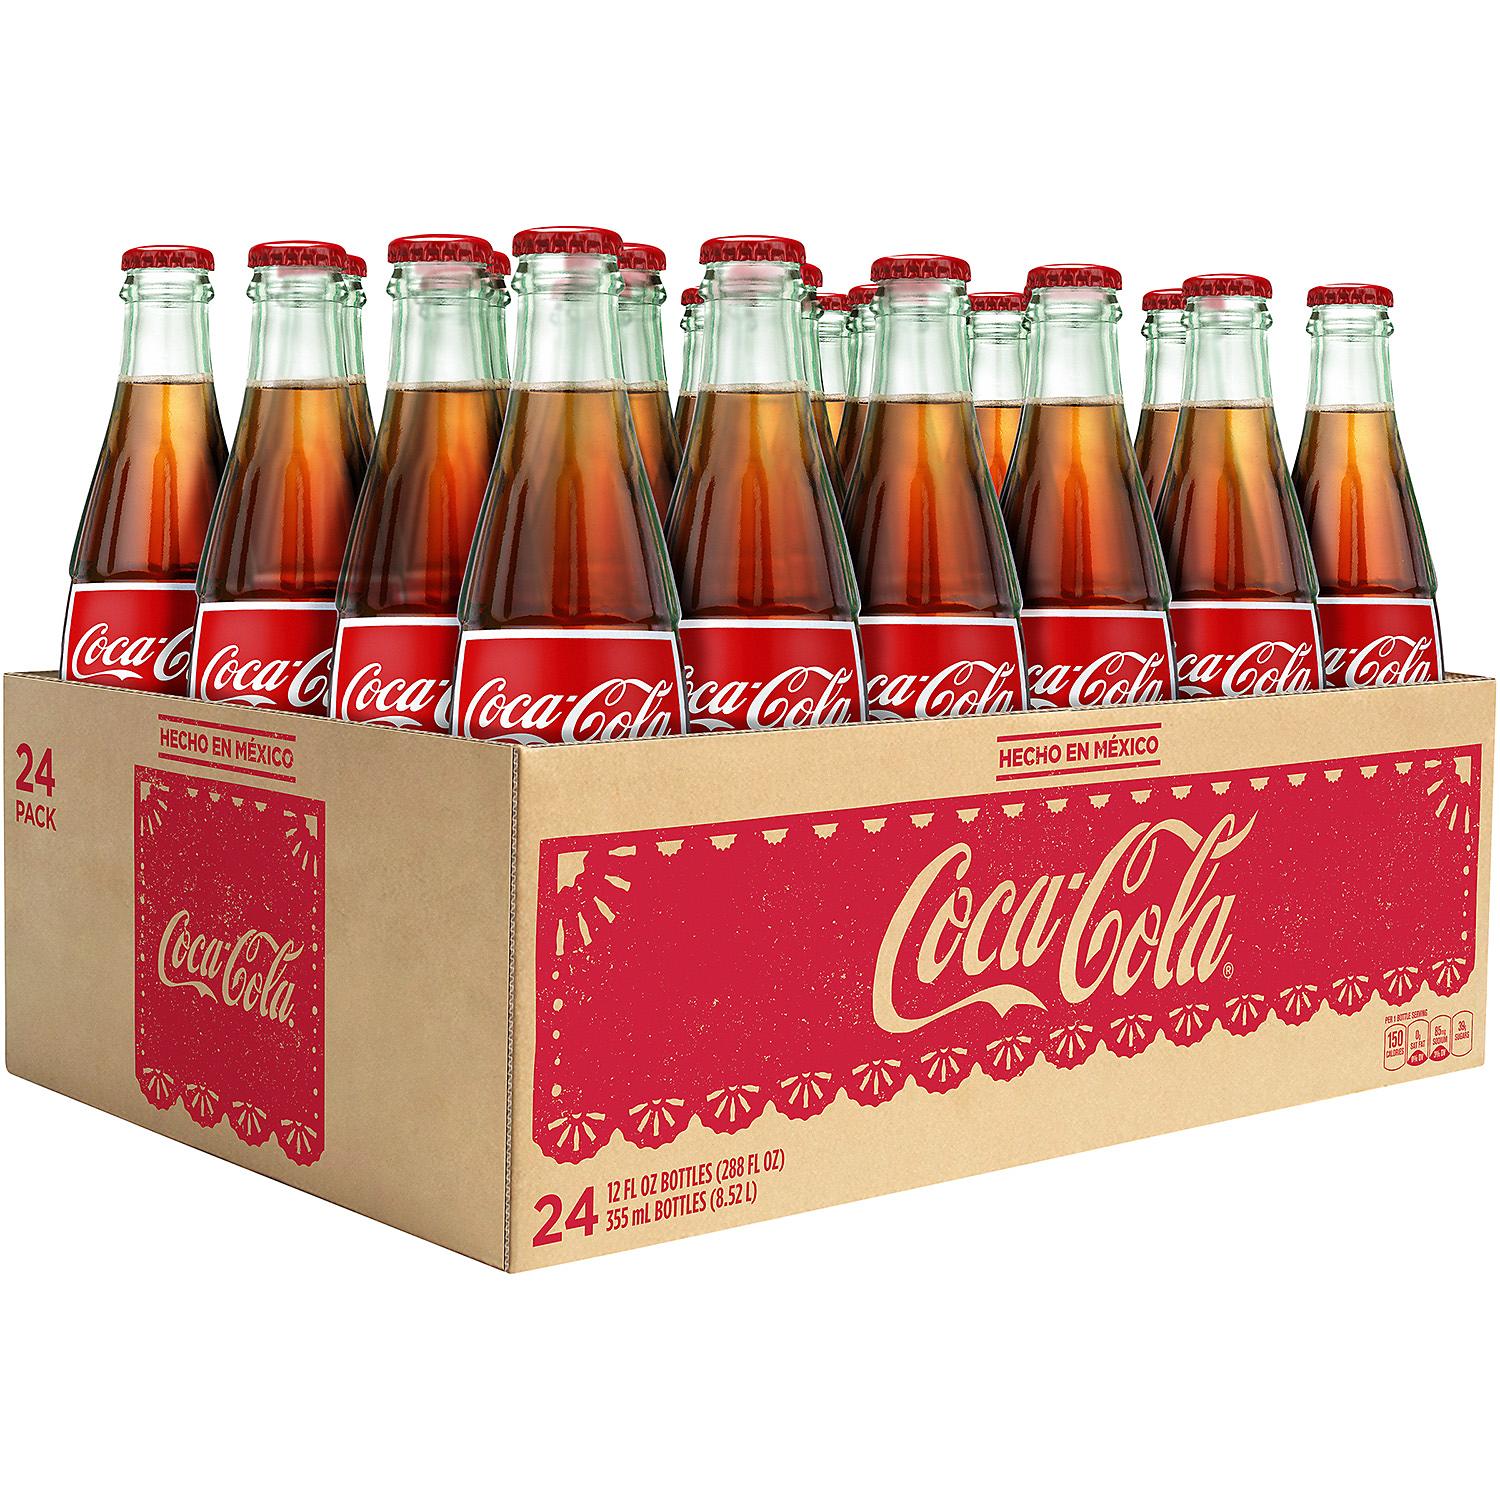 Coca@Cola Bottles de Mexico - 12oz/24pk